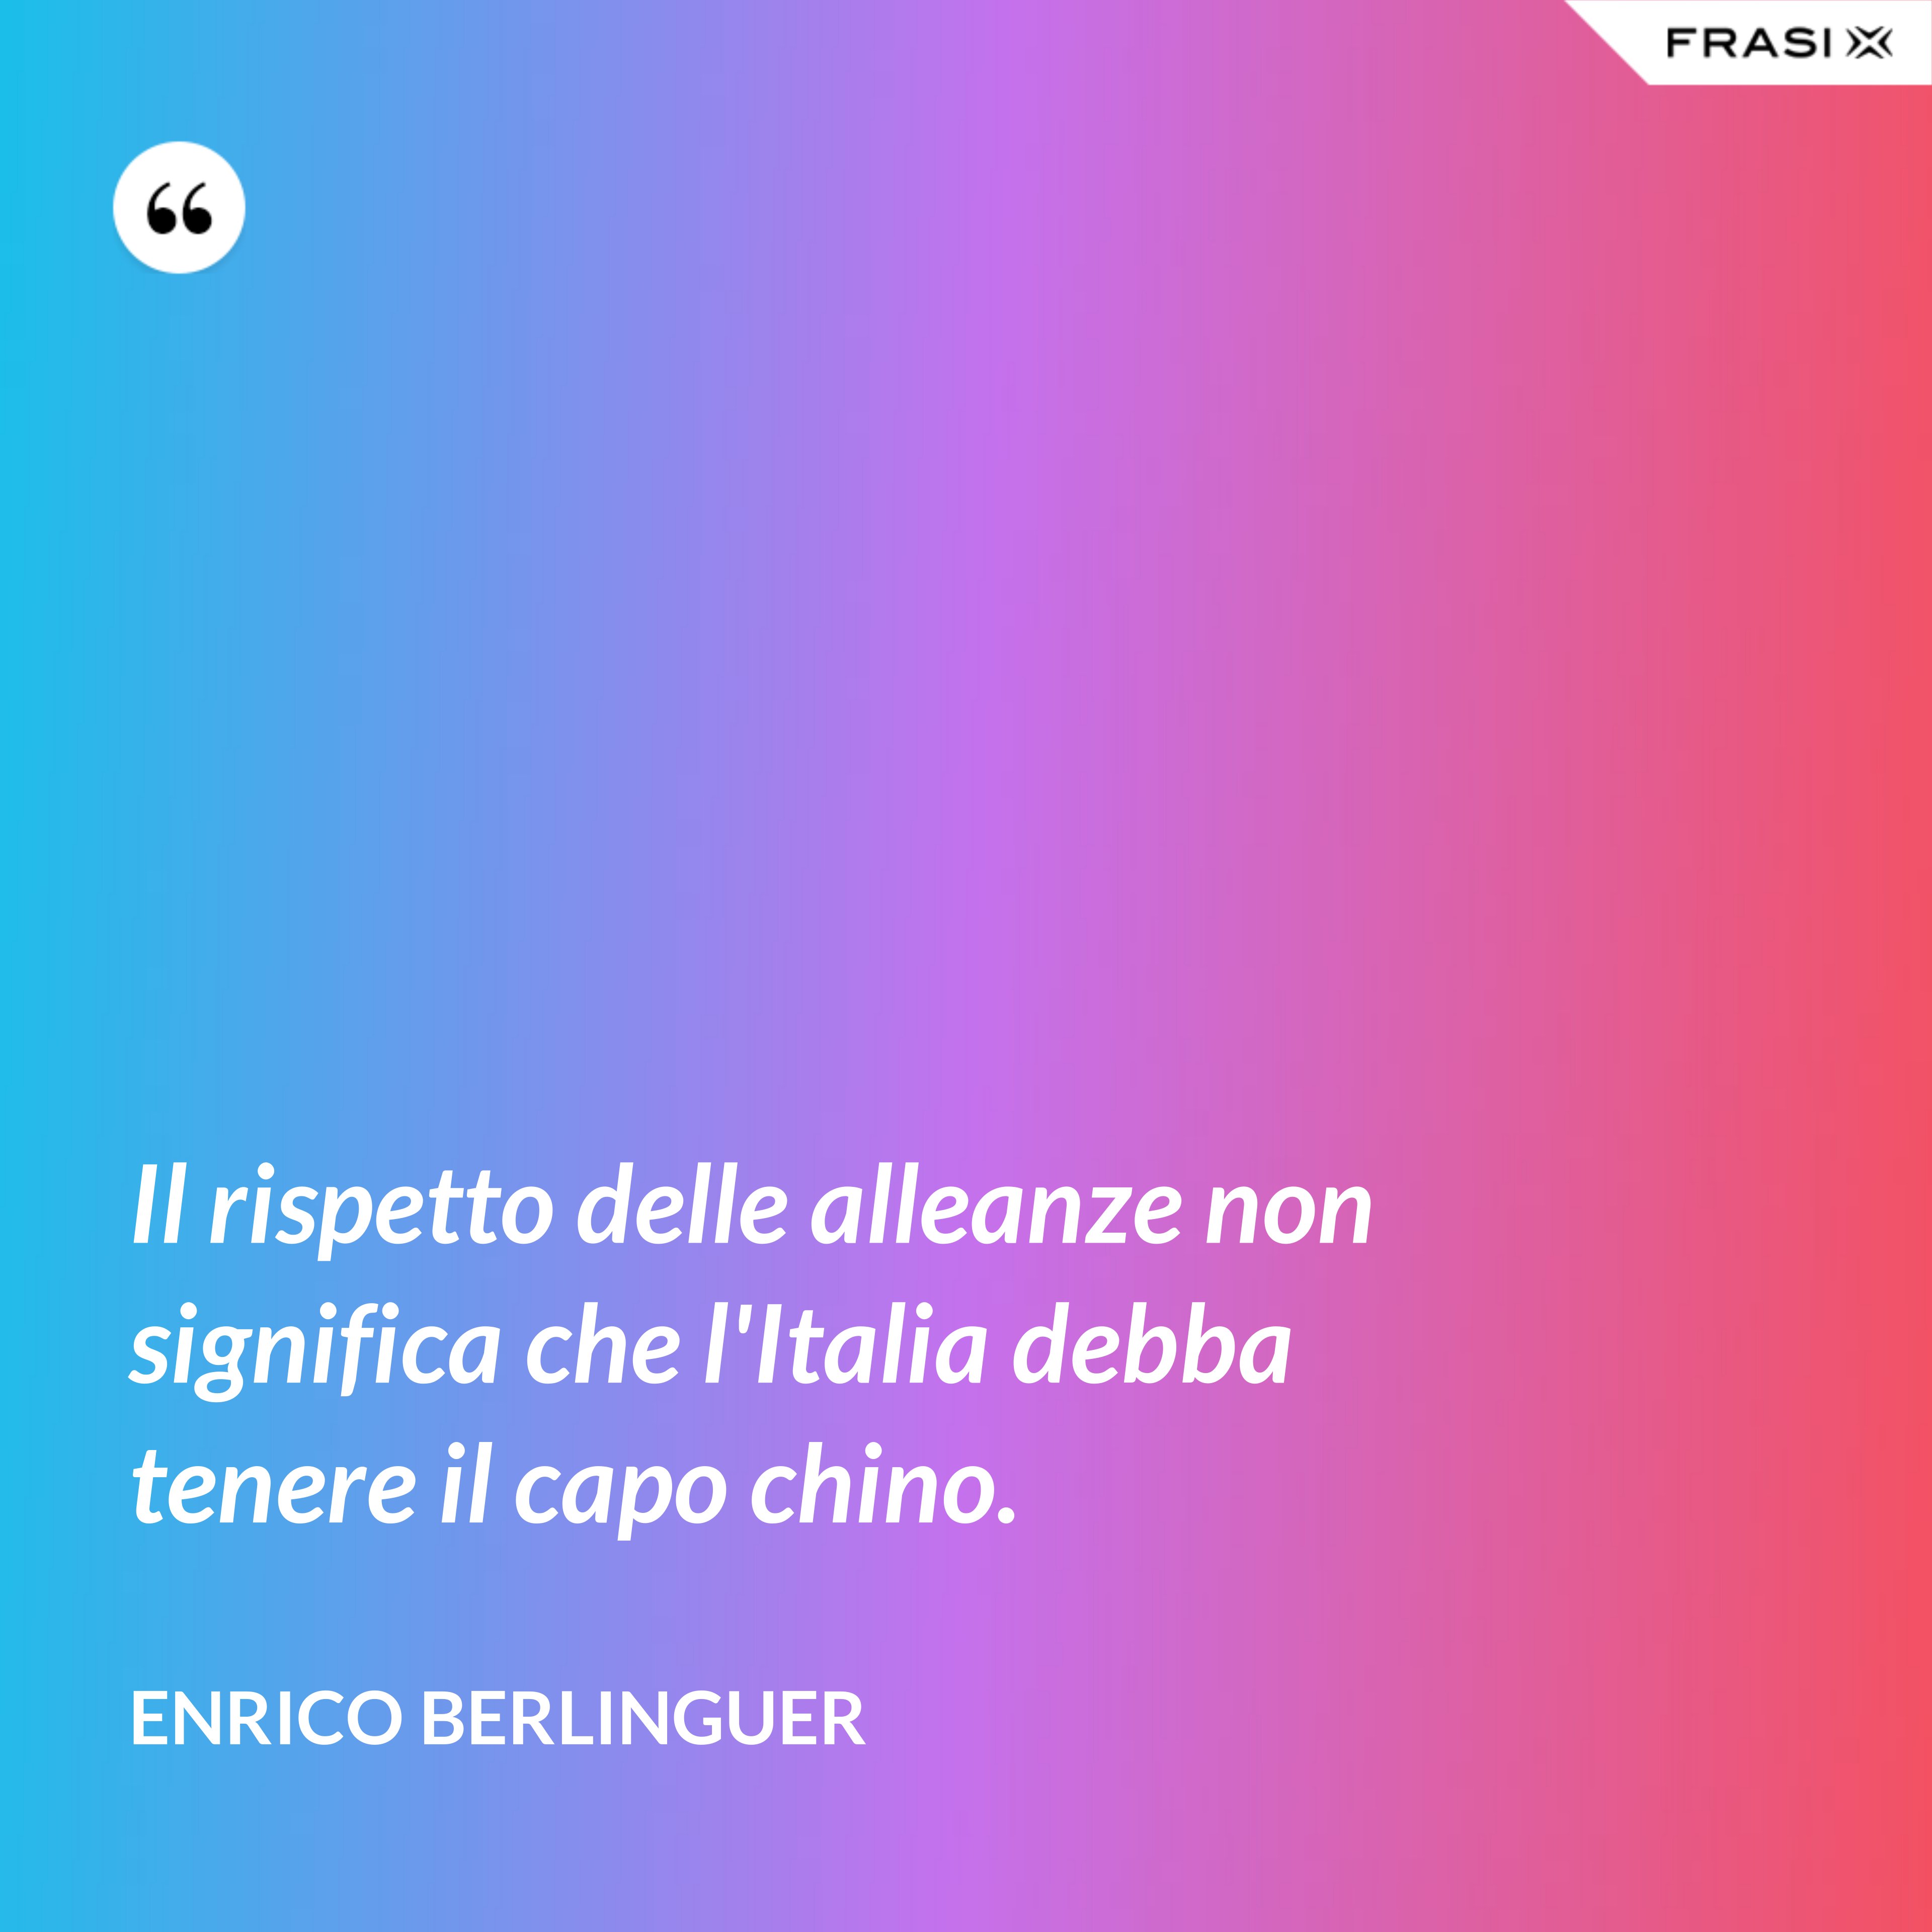 Il rispetto delle alleanze non significa che l'Italia debba tenere il capo chino. - Enrico Berlinguer